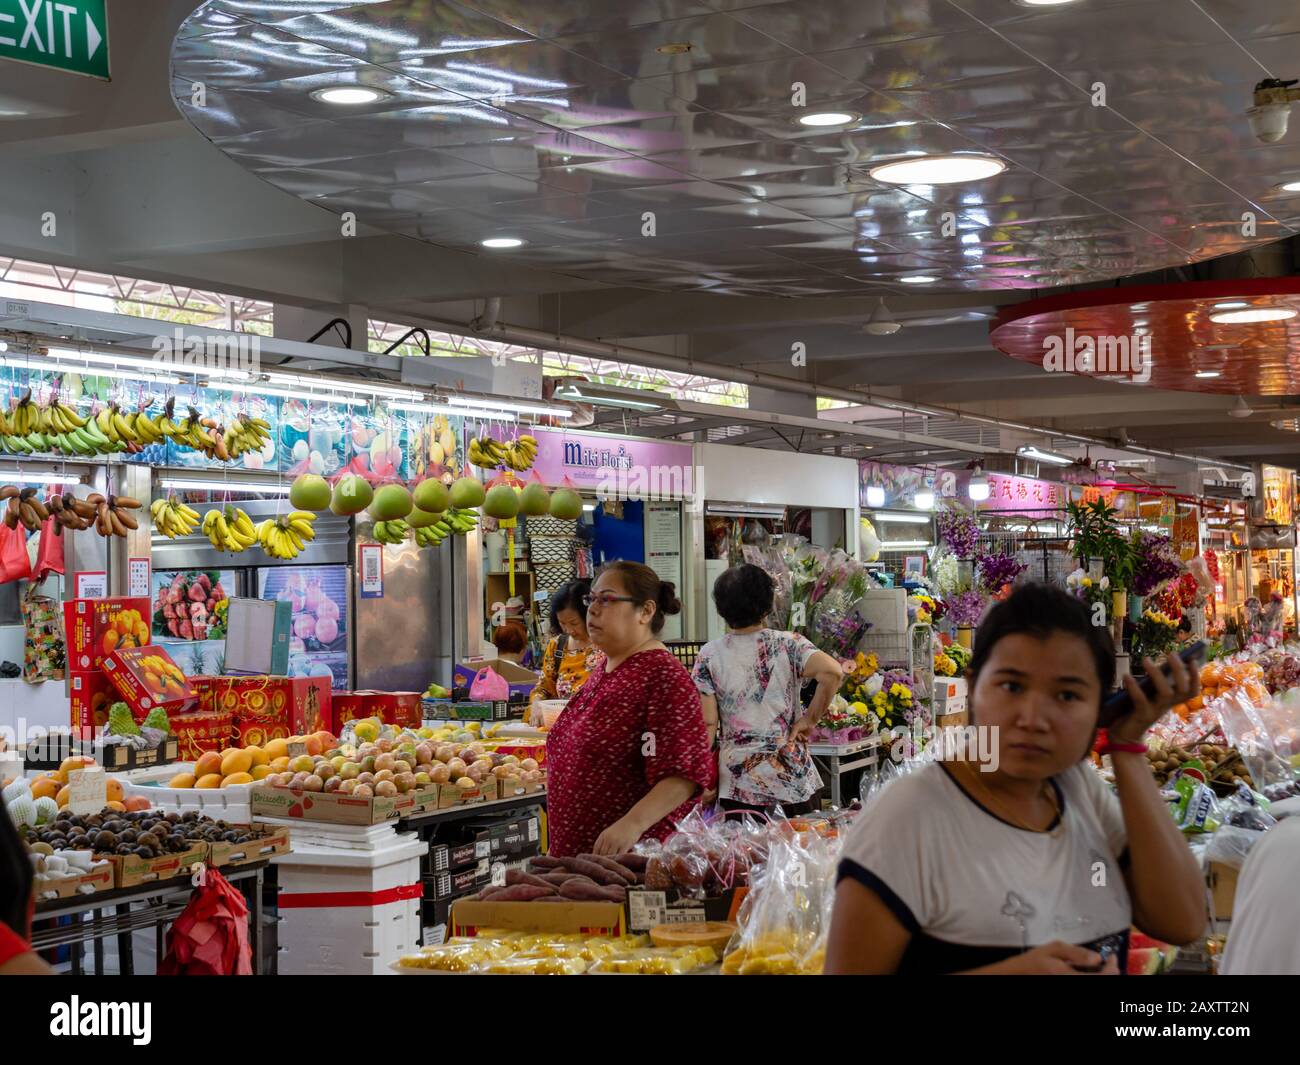 Singapour – 4 JANVIER 2020 – un étalage de fruits sur le marché humide Ang Mo Kio à Singapour, en Asie du Sud-est. Des fruits tropicaux et des articles d'épicerie sont exposés Banque D'Images